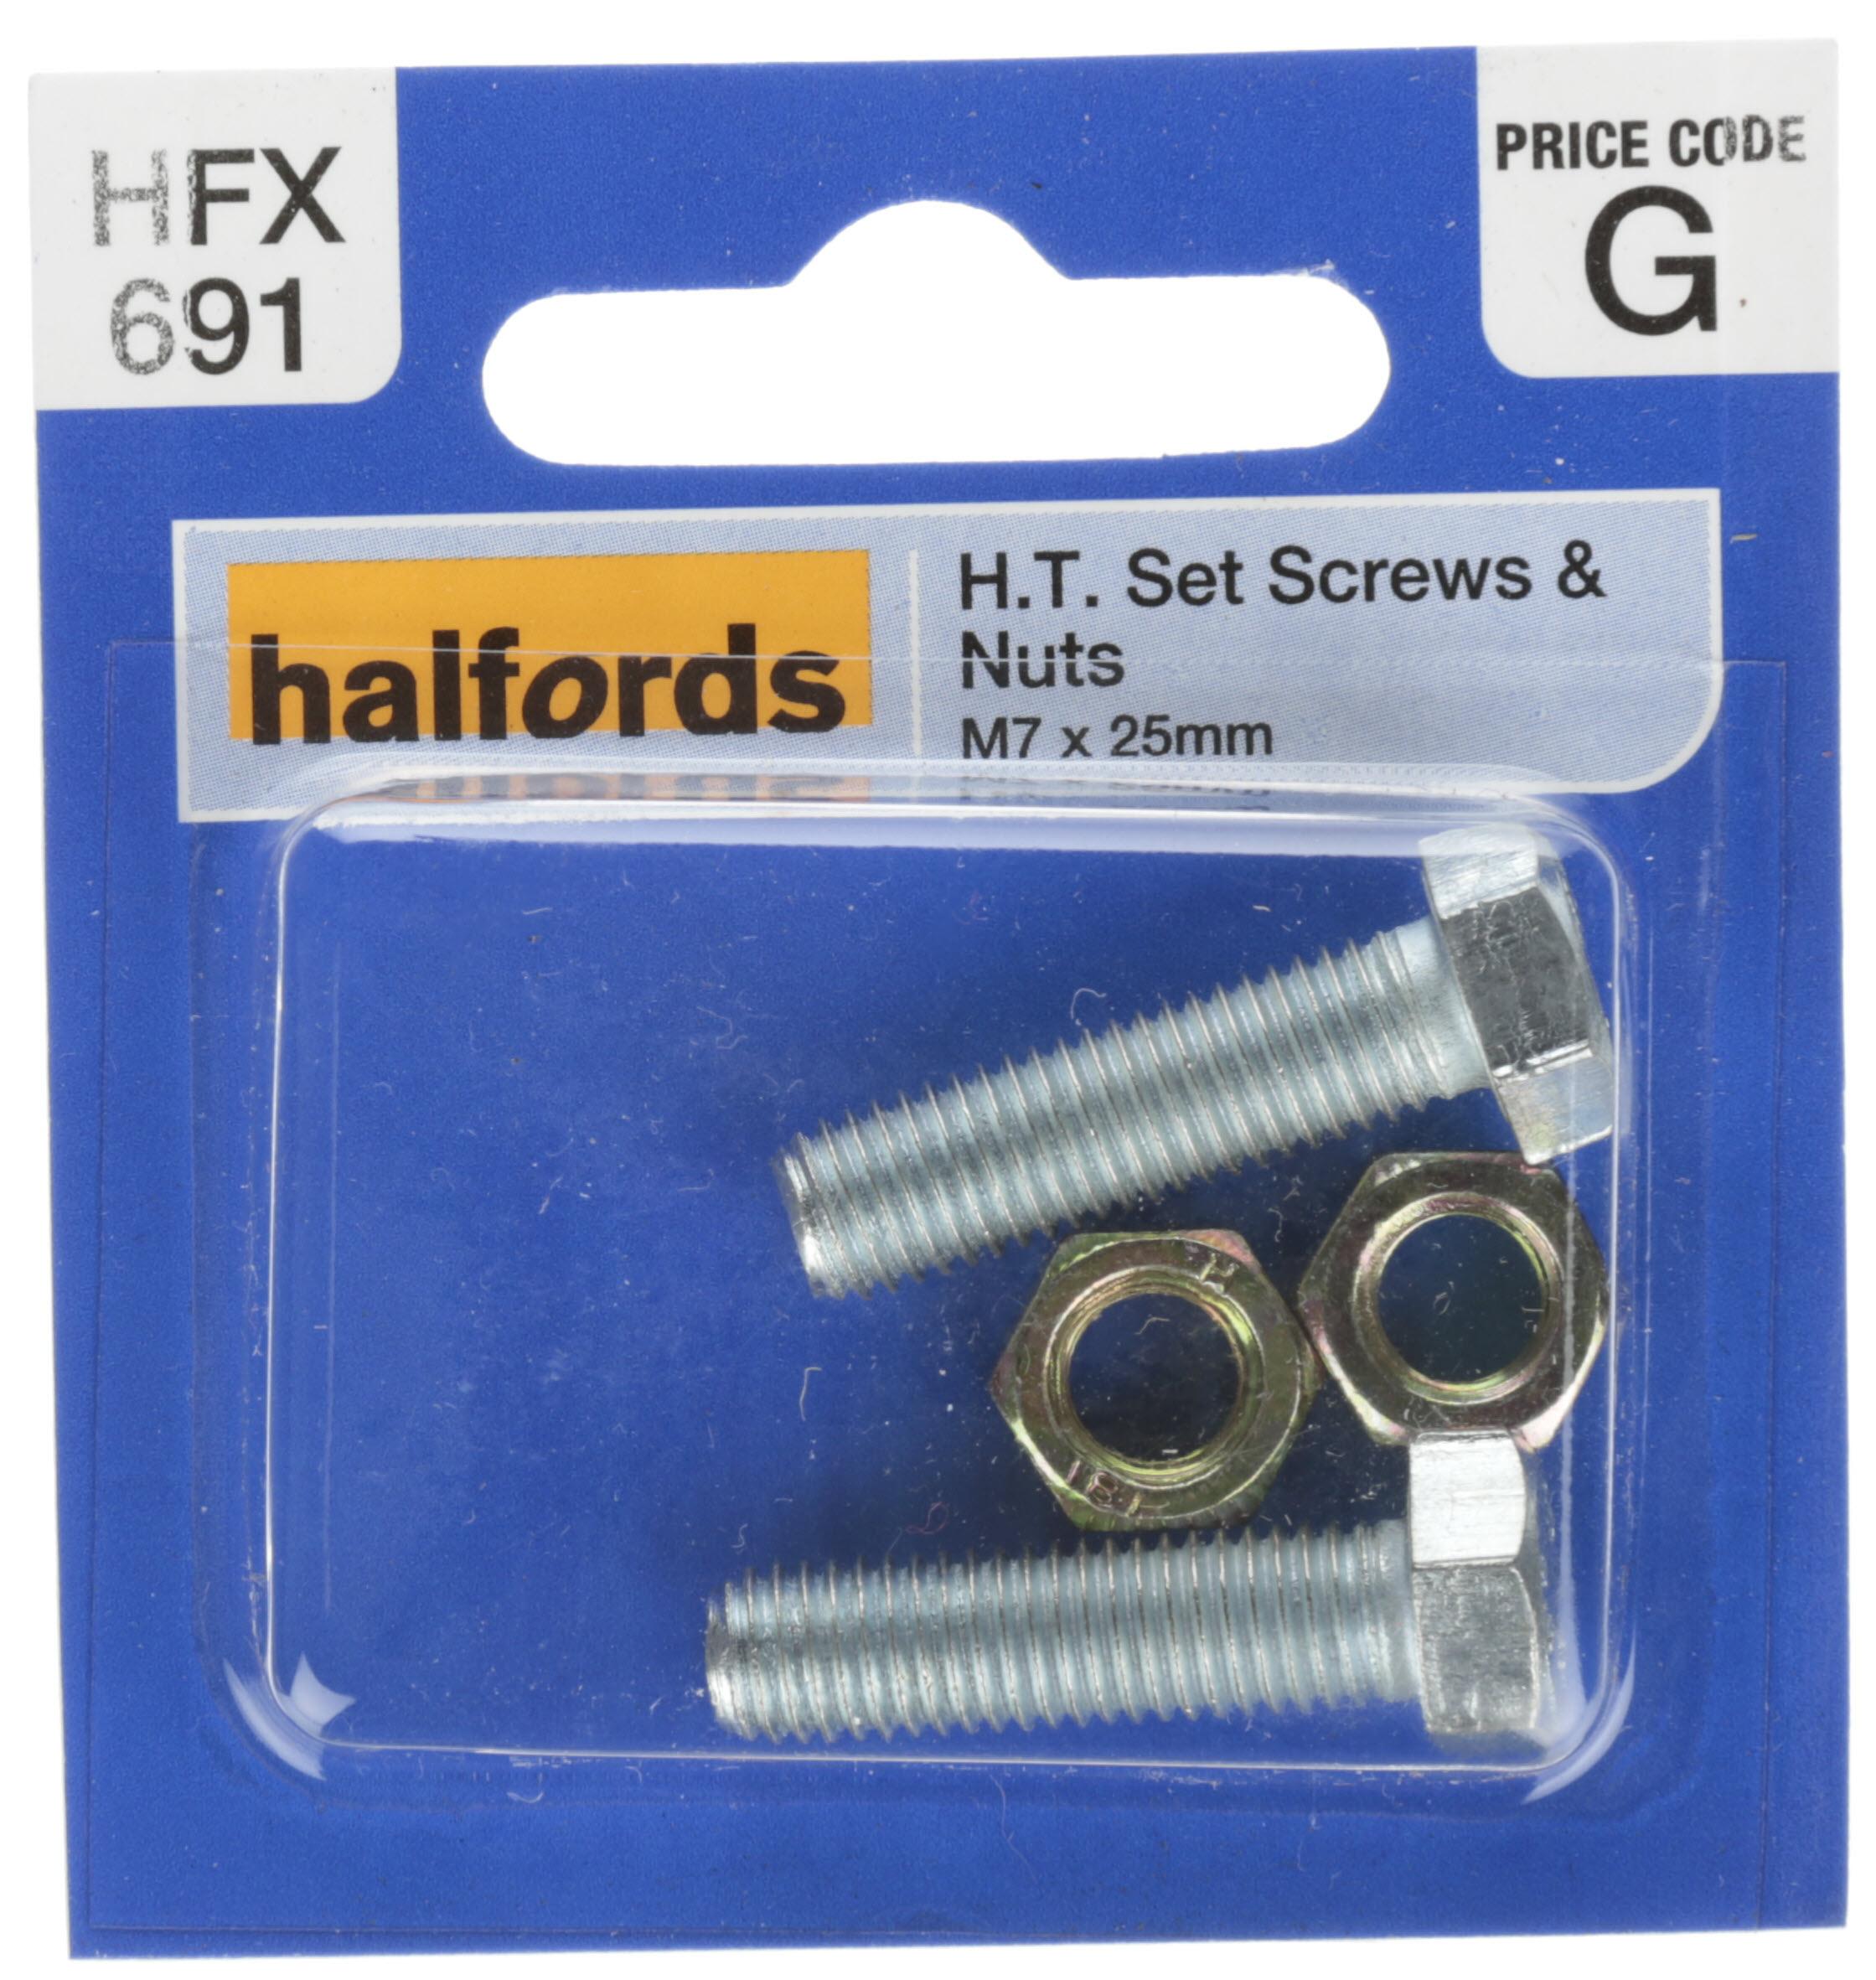 Halfords Set Screws & Nuts M7 X 25Mm (Hfx691)